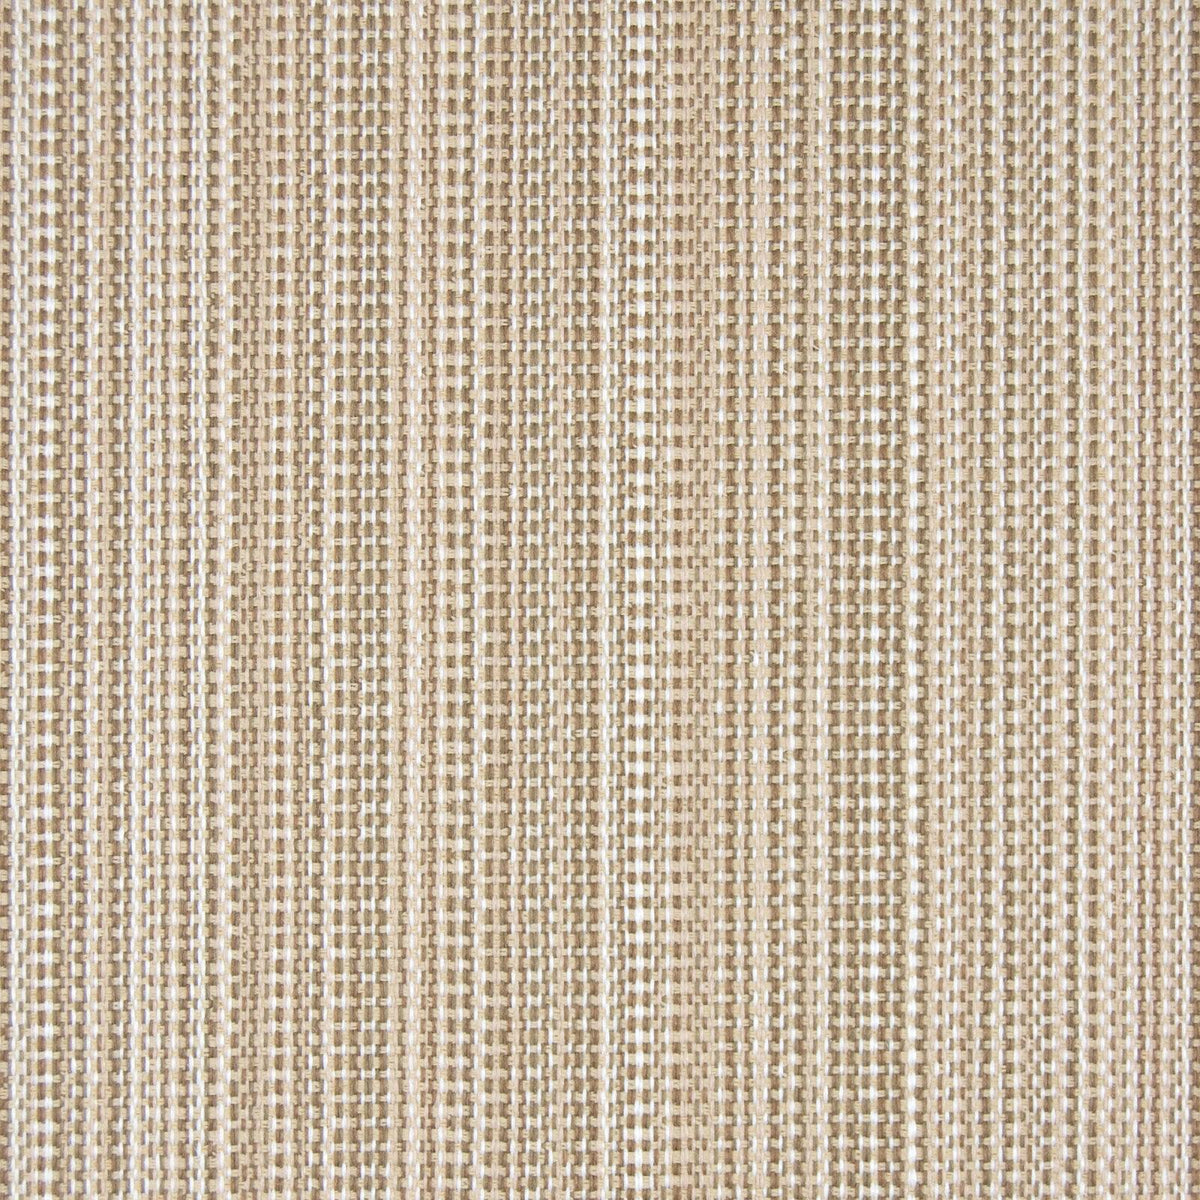 B6894 Driftwood - Atlanta Fabrics